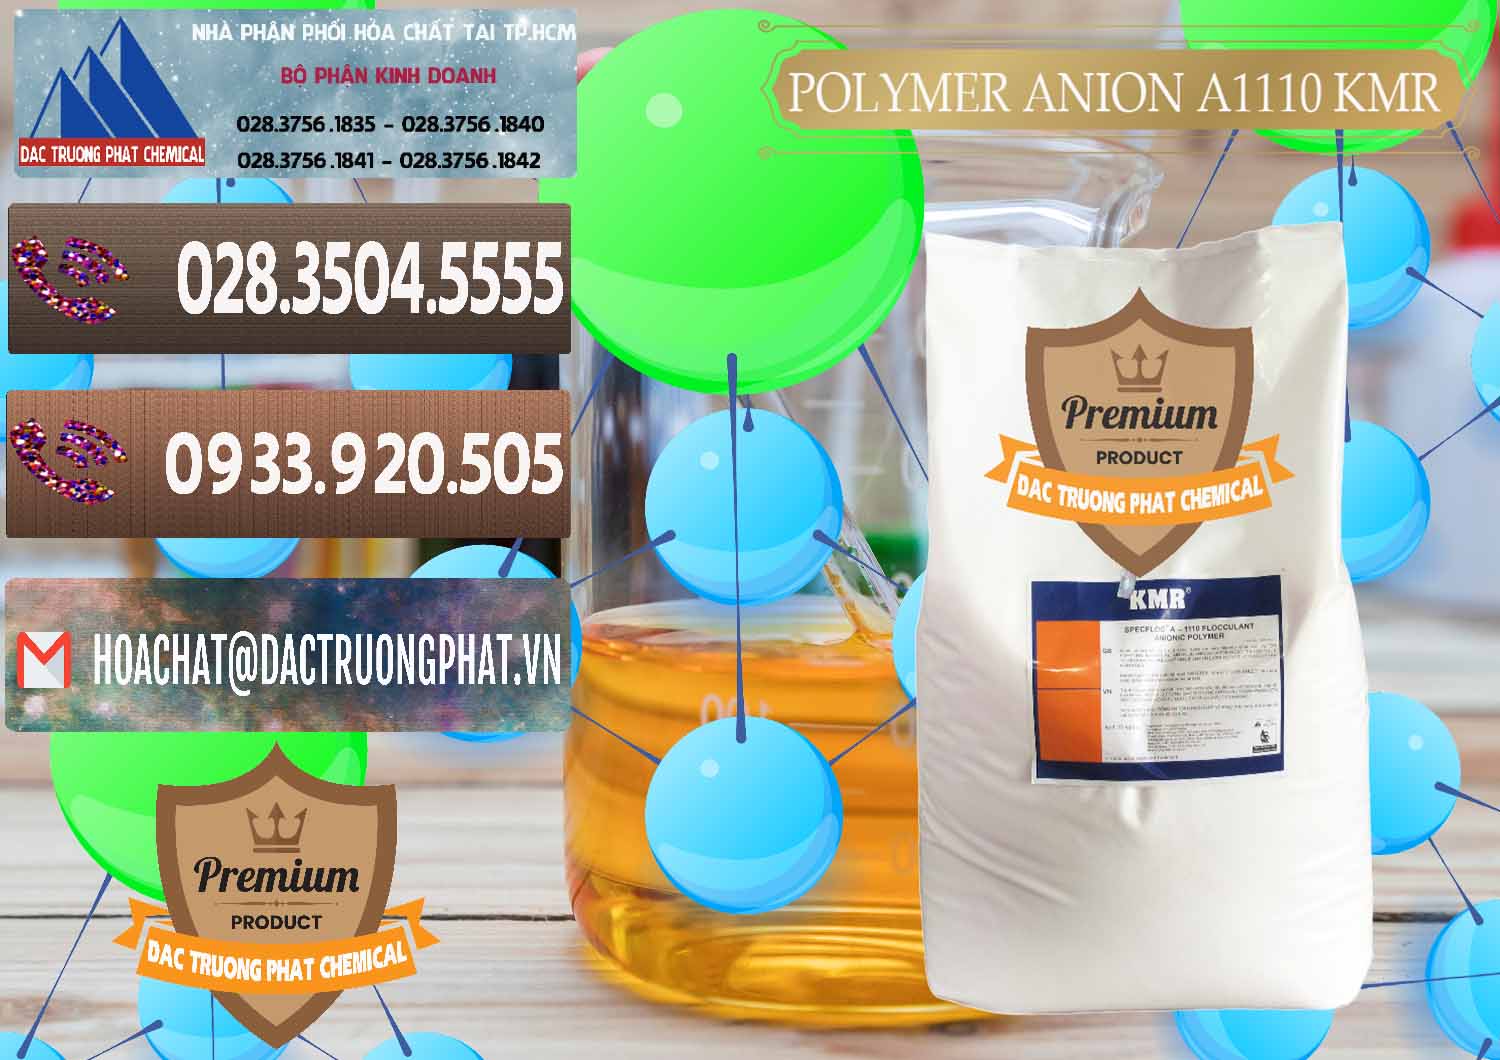 Công ty chuyên bán & phân phối Polymer Anion A1110 - KMR Anh Quốc England - 0118 - Chuyên kinh doanh và phân phối hóa chất tại TP.HCM - hoachatviet.net